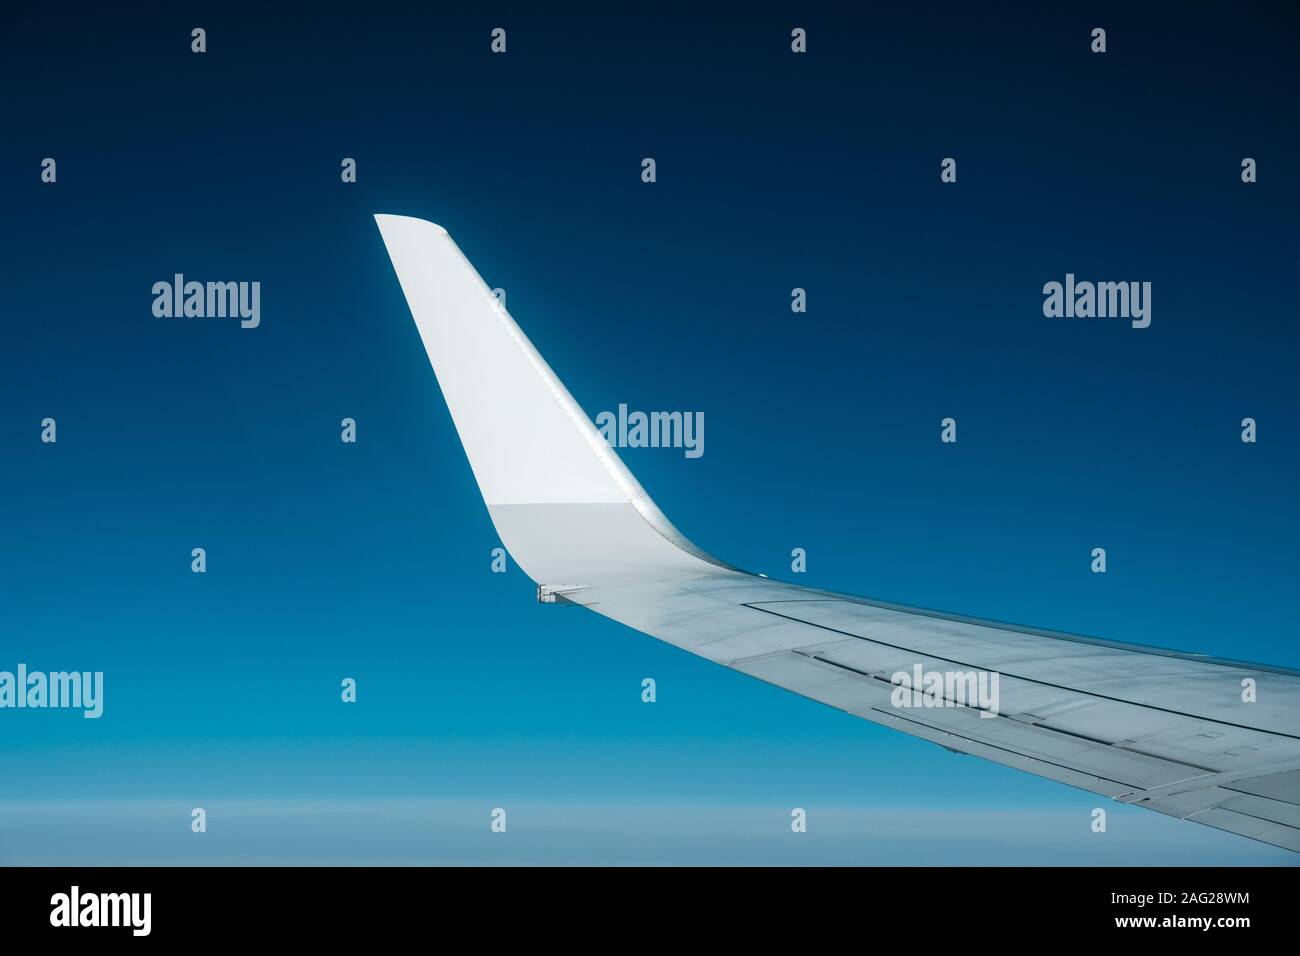 Blank ala di aeroplano cielo blu sullo sfondo dell'antenna Foto Stock